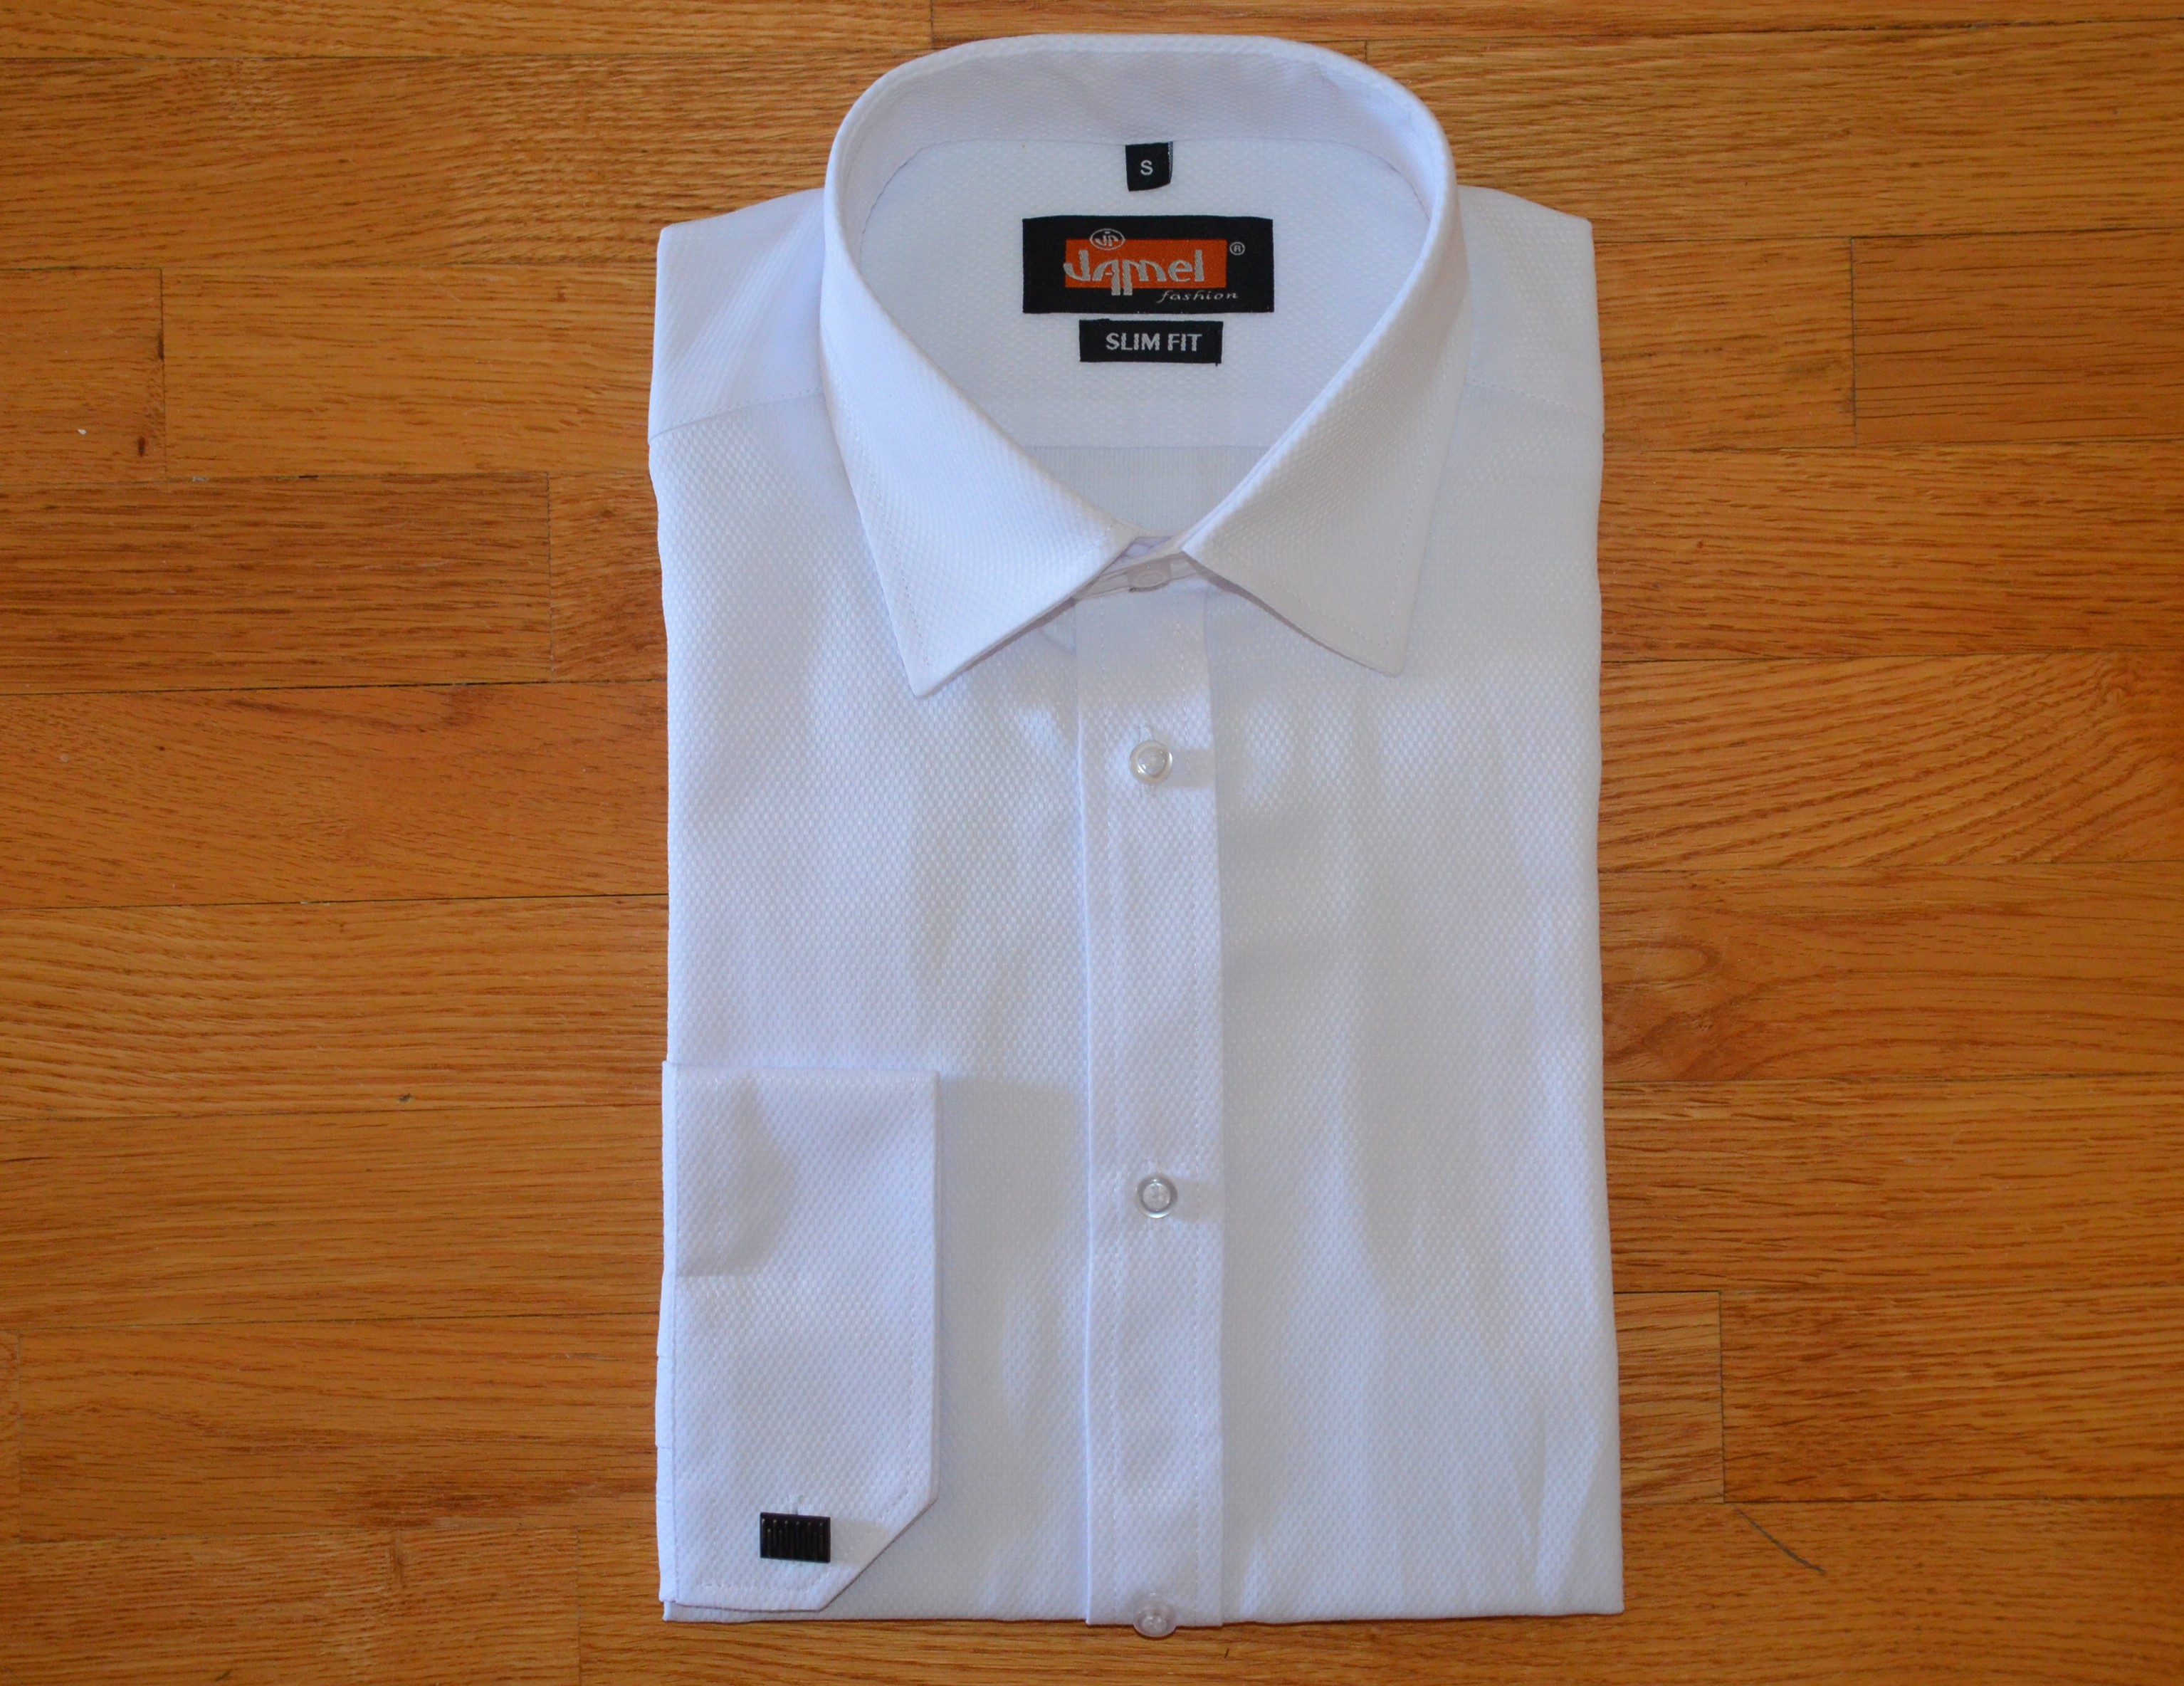 Pánská košile dlouhý rukáv Jamel Fashion 570 003/01 SLIM FIT Bílá jemný vzor manžetový knoflík Velikost: 45-46 XXL